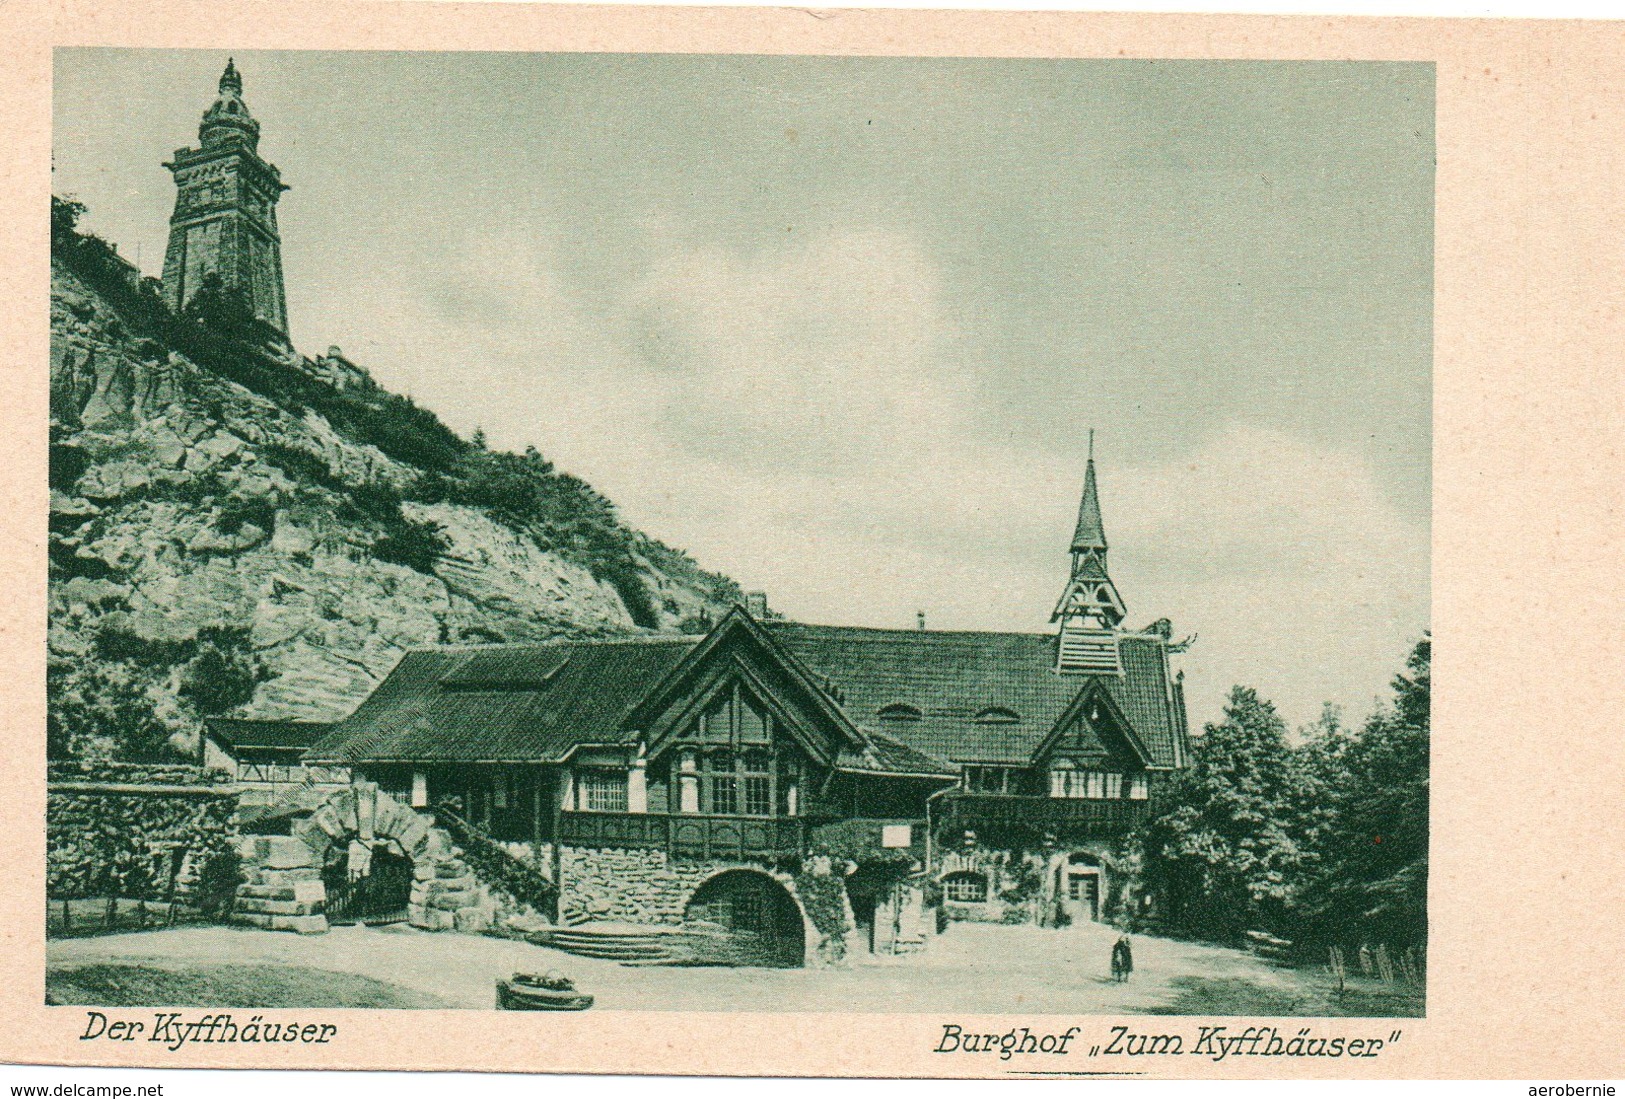 Alte Postkarte Burghof "Zum Kyffhäuser" - Kyffhäuser